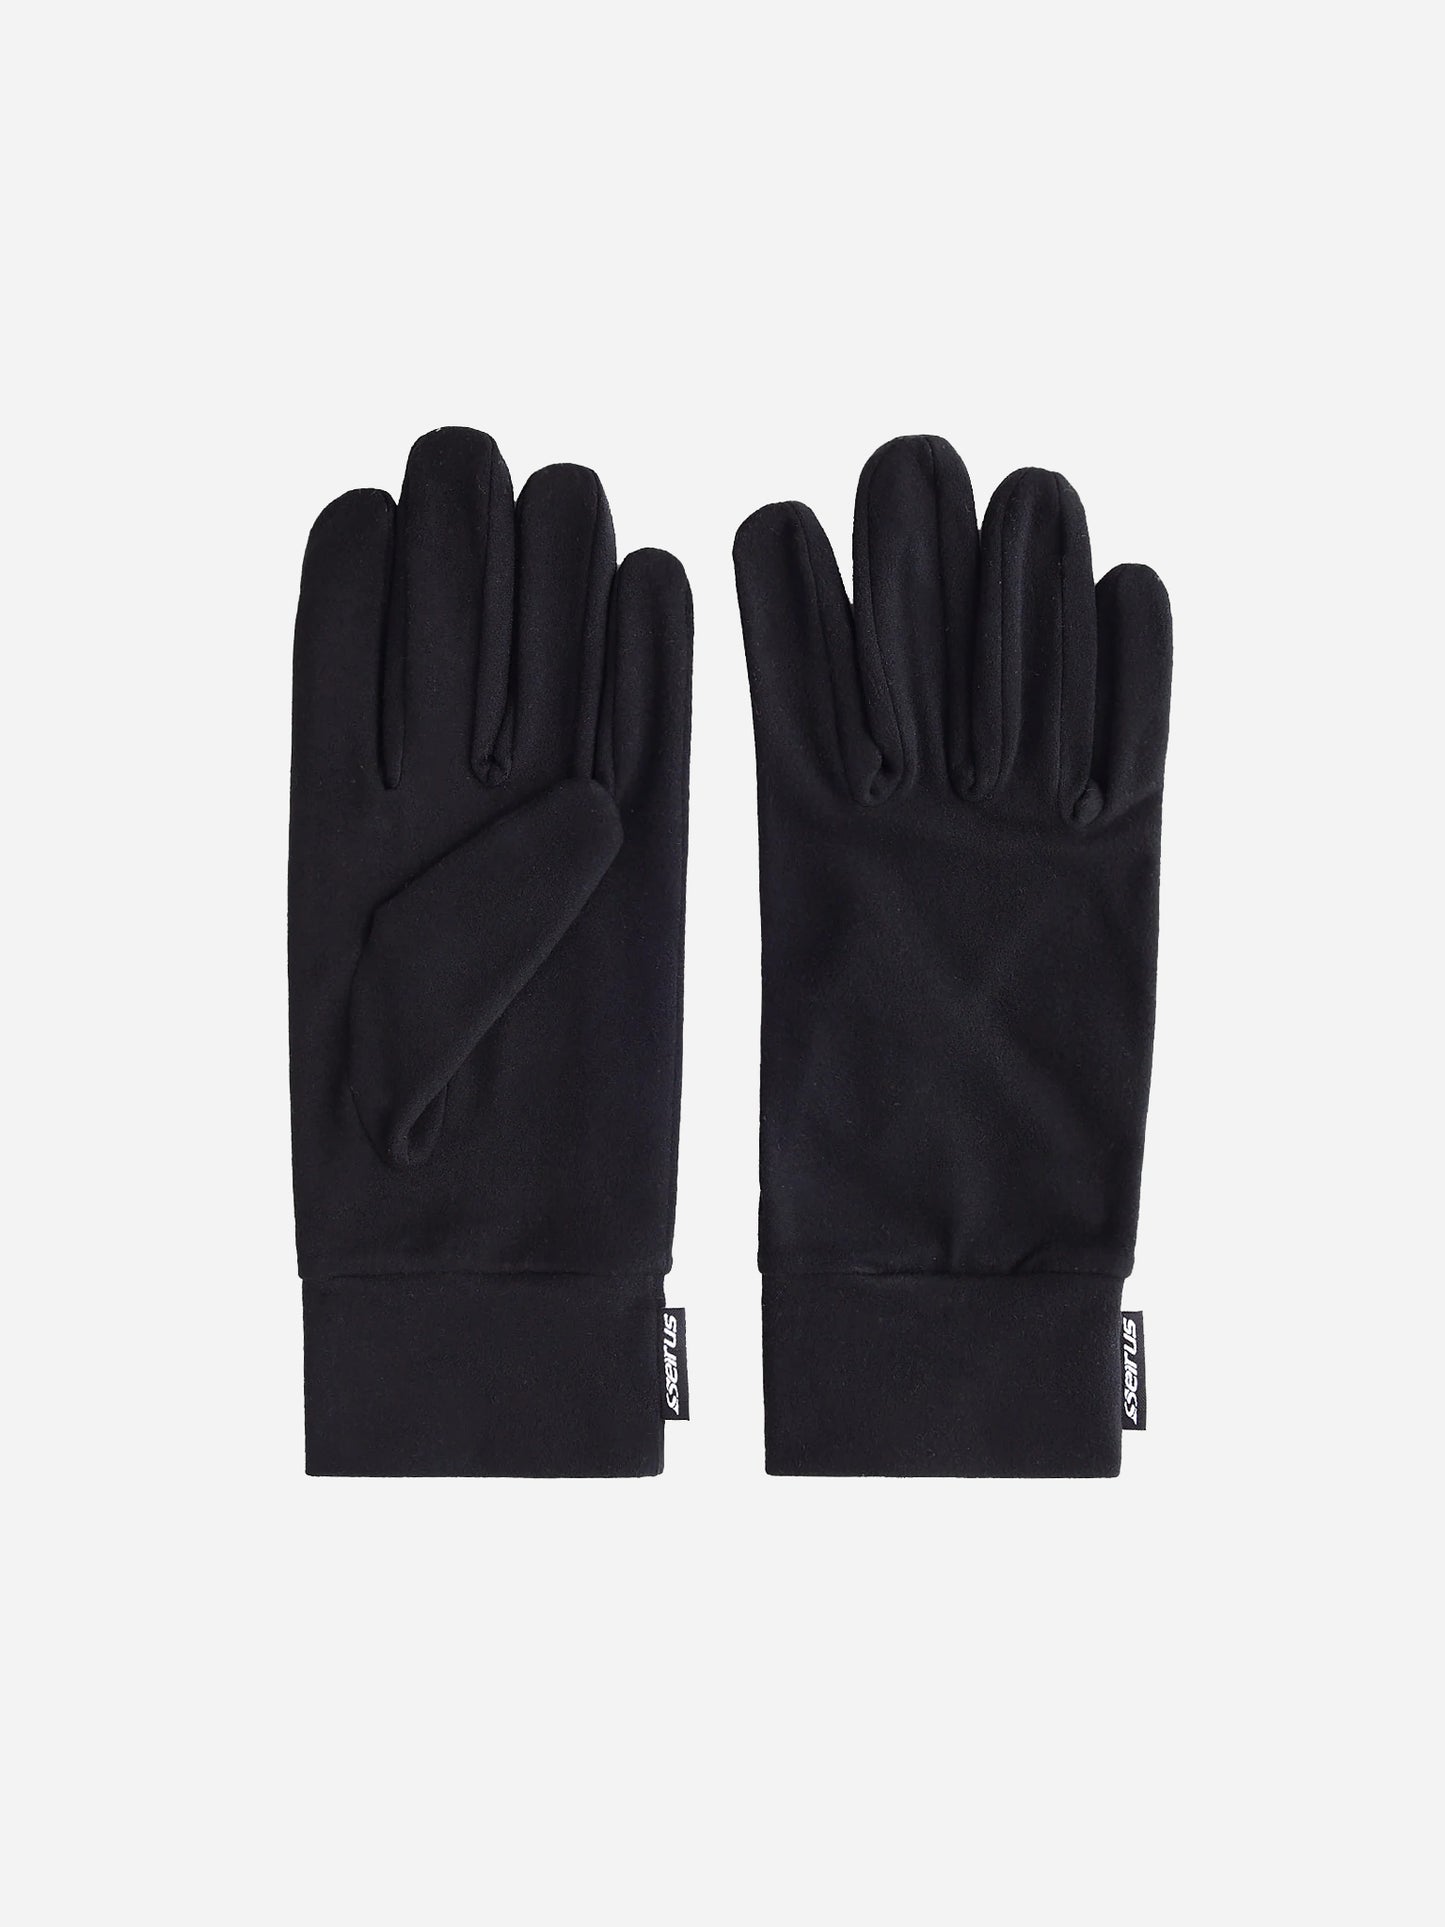 Seirus Heatwave™ Glove Liner